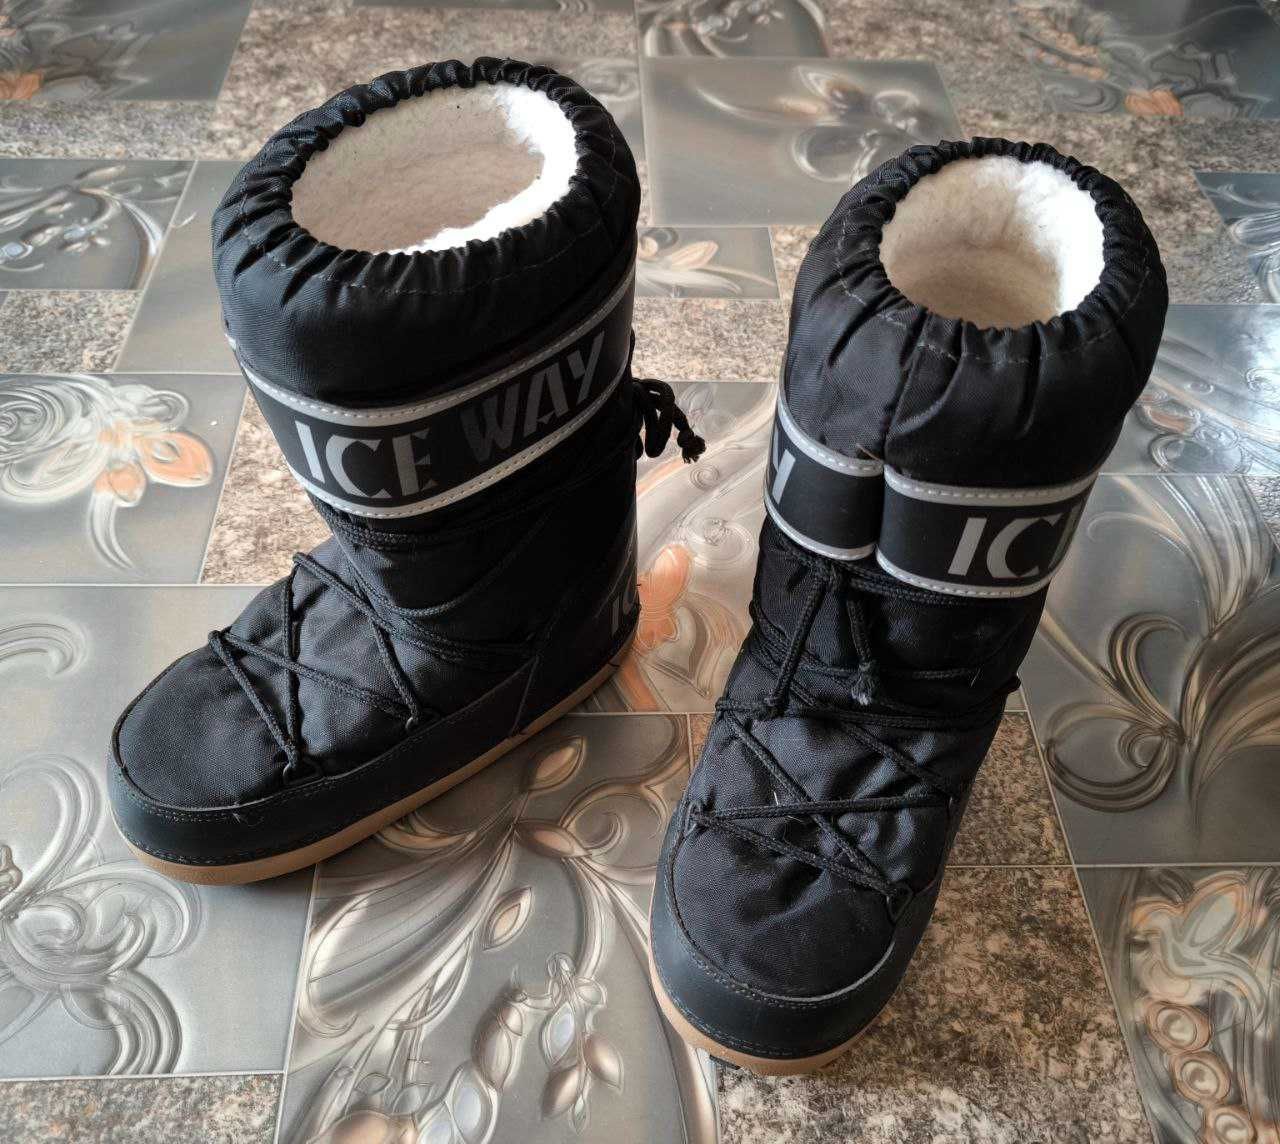 Унісекс зимові чоботи (мунбути) ICE WAY Slalom